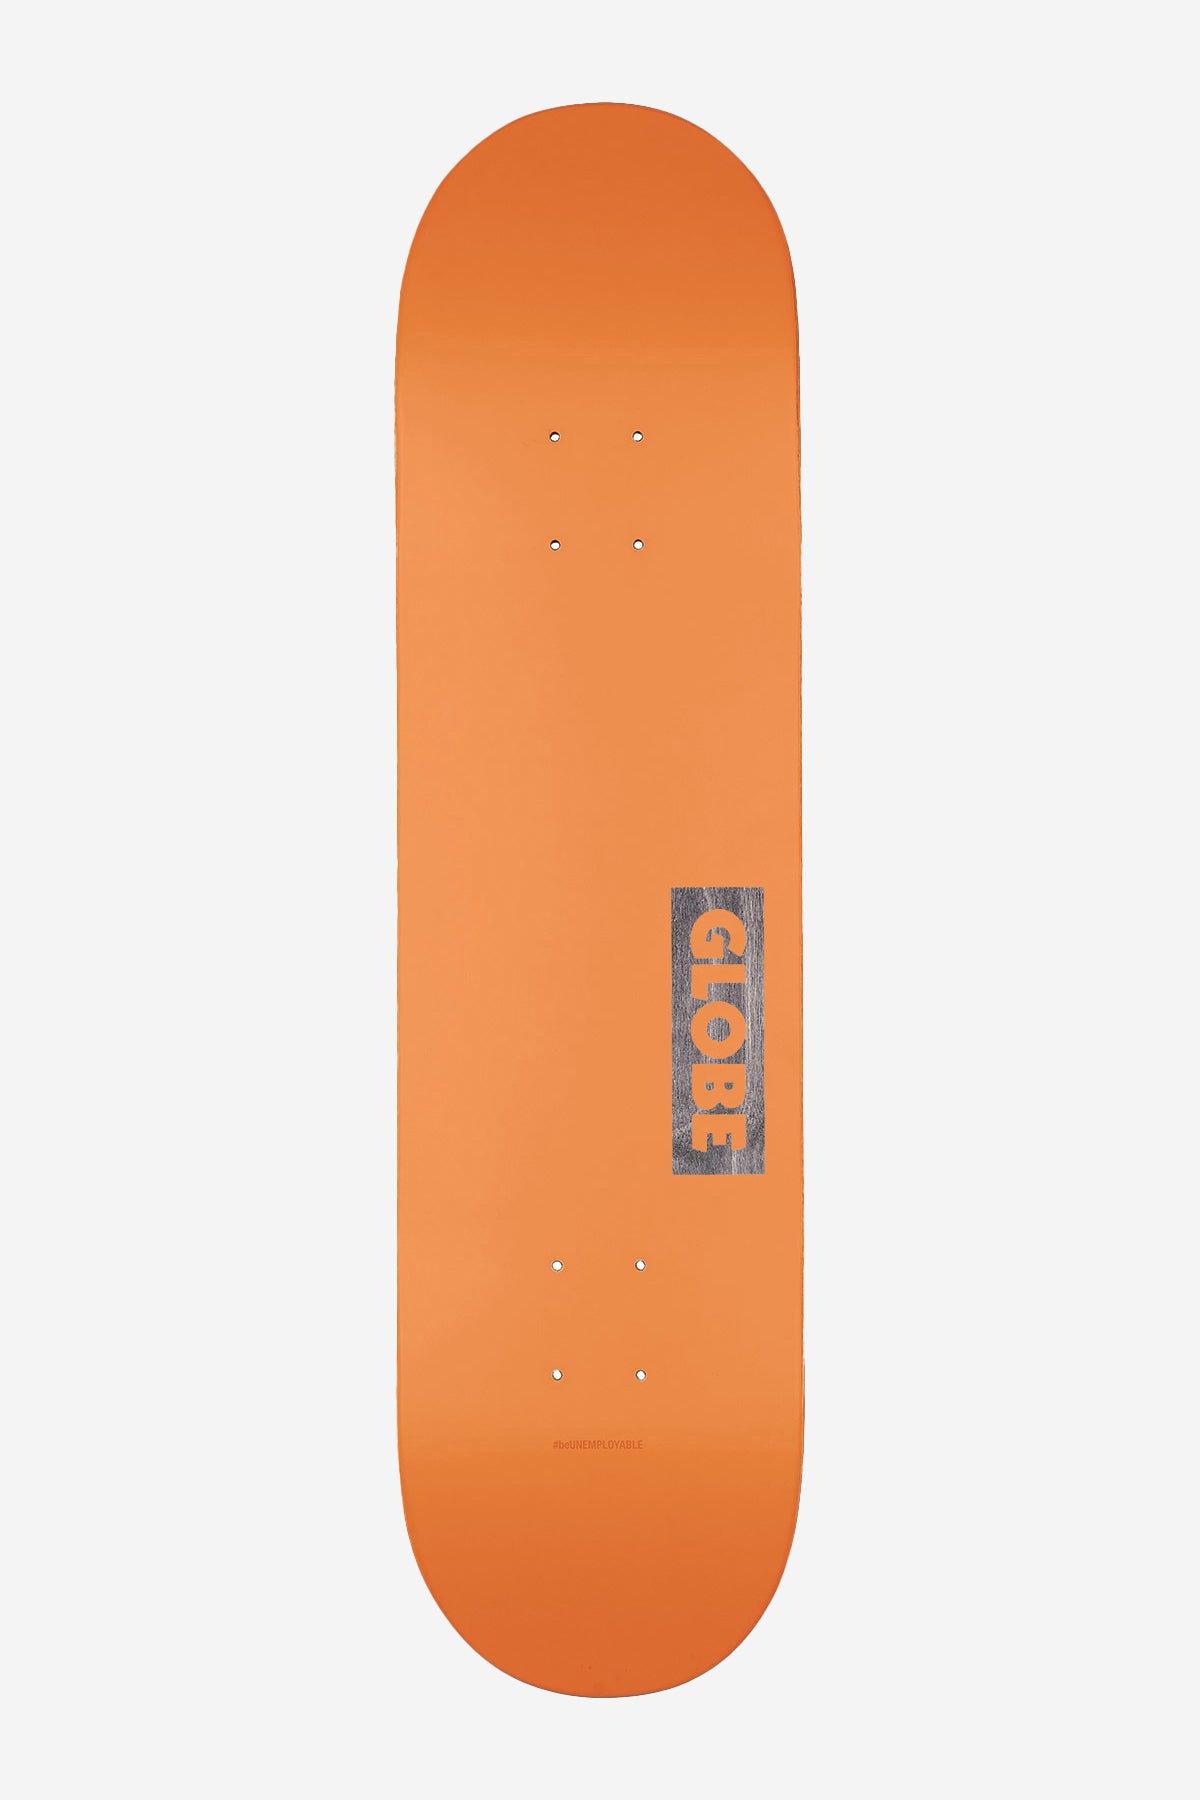 Globe - Goodstock - Neon Orange - Skate de 8.125" Deck